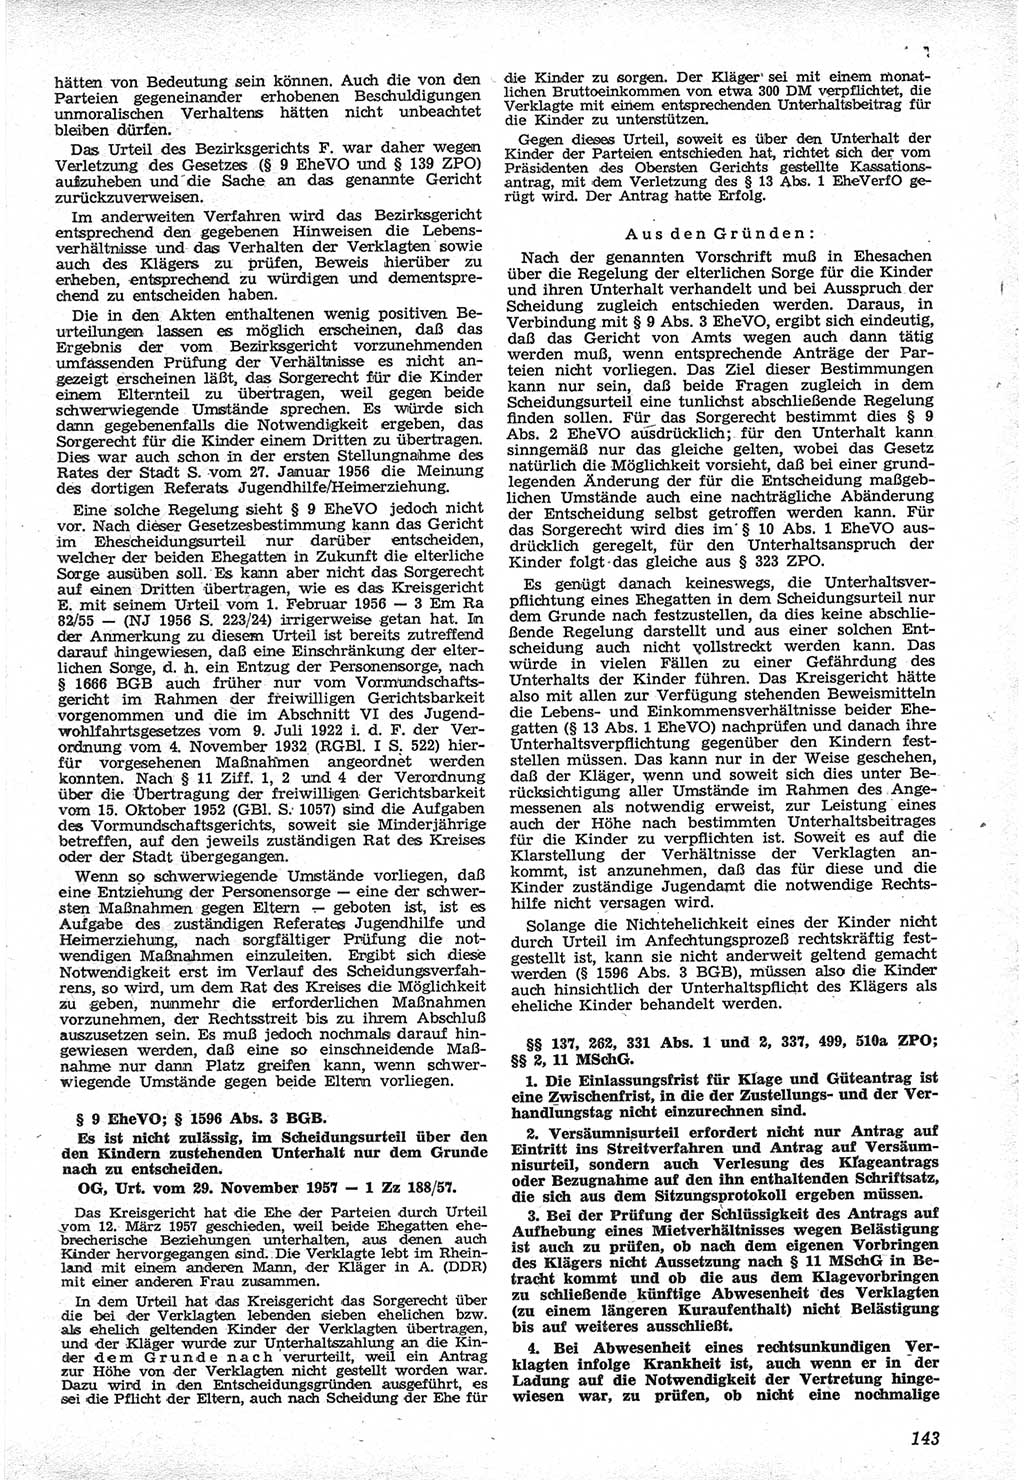 Neue Justiz (NJ), Zeitschrift für Recht und Rechtswissenschaft [Deutsche Demokratische Republik (DDR)], 12. Jahrgang 1958, Seite 143 (NJ DDR 1958, S. 143)